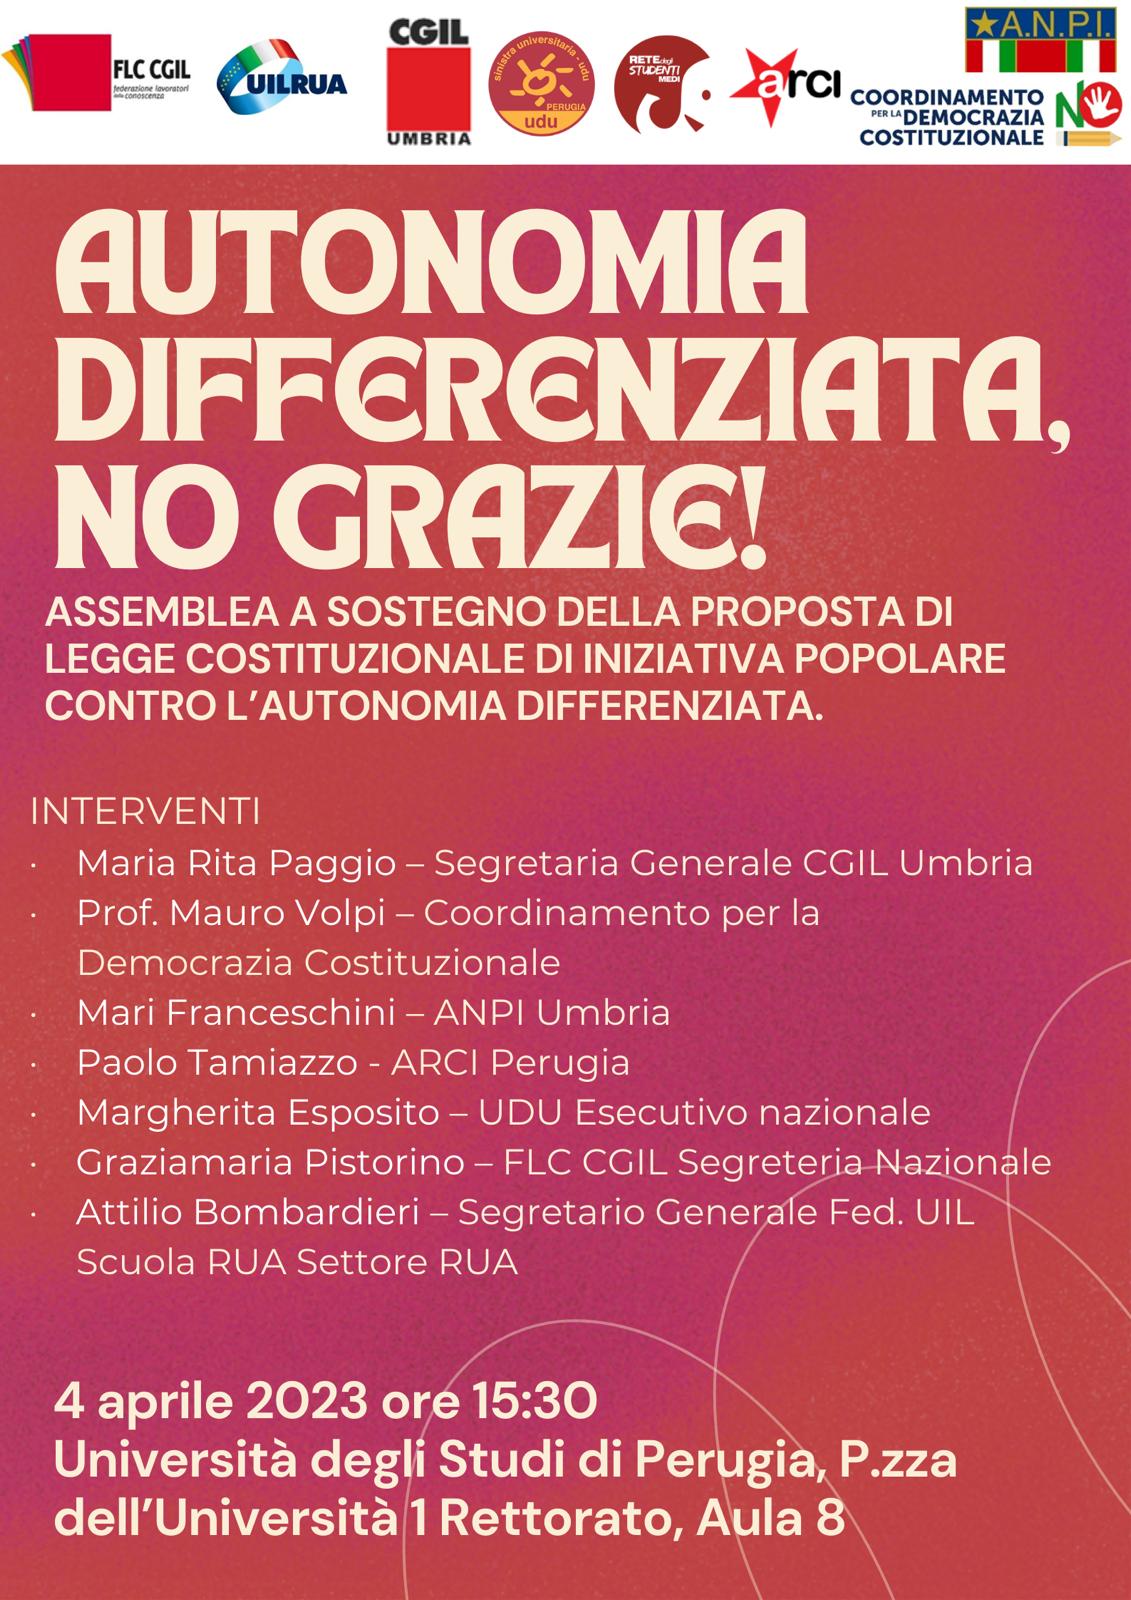 Autonomia differenziata, no grazie. Incontro a Perugia 4 aprile